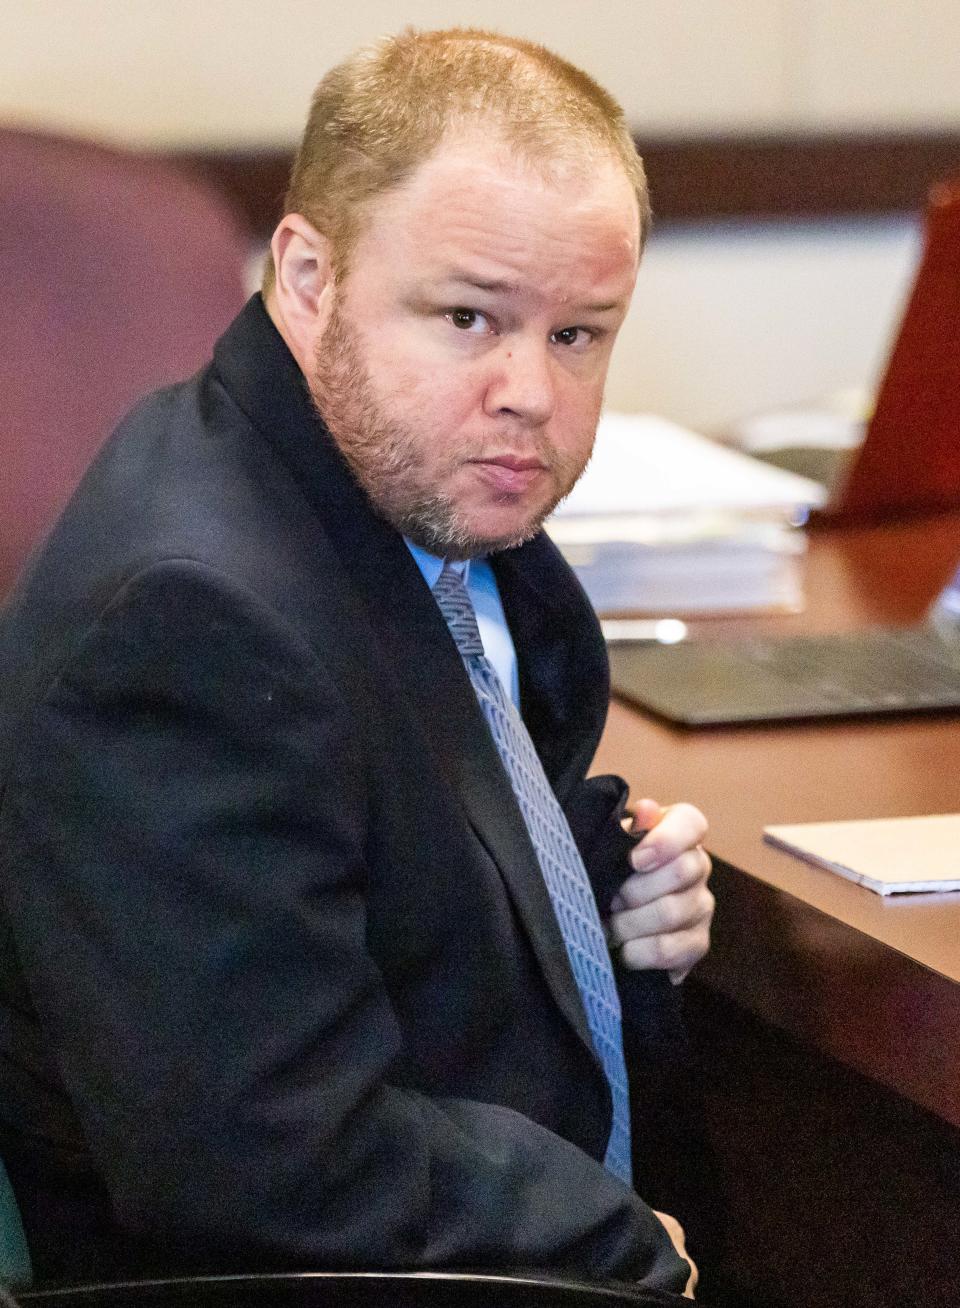 Michael Wayne Jones at his trial